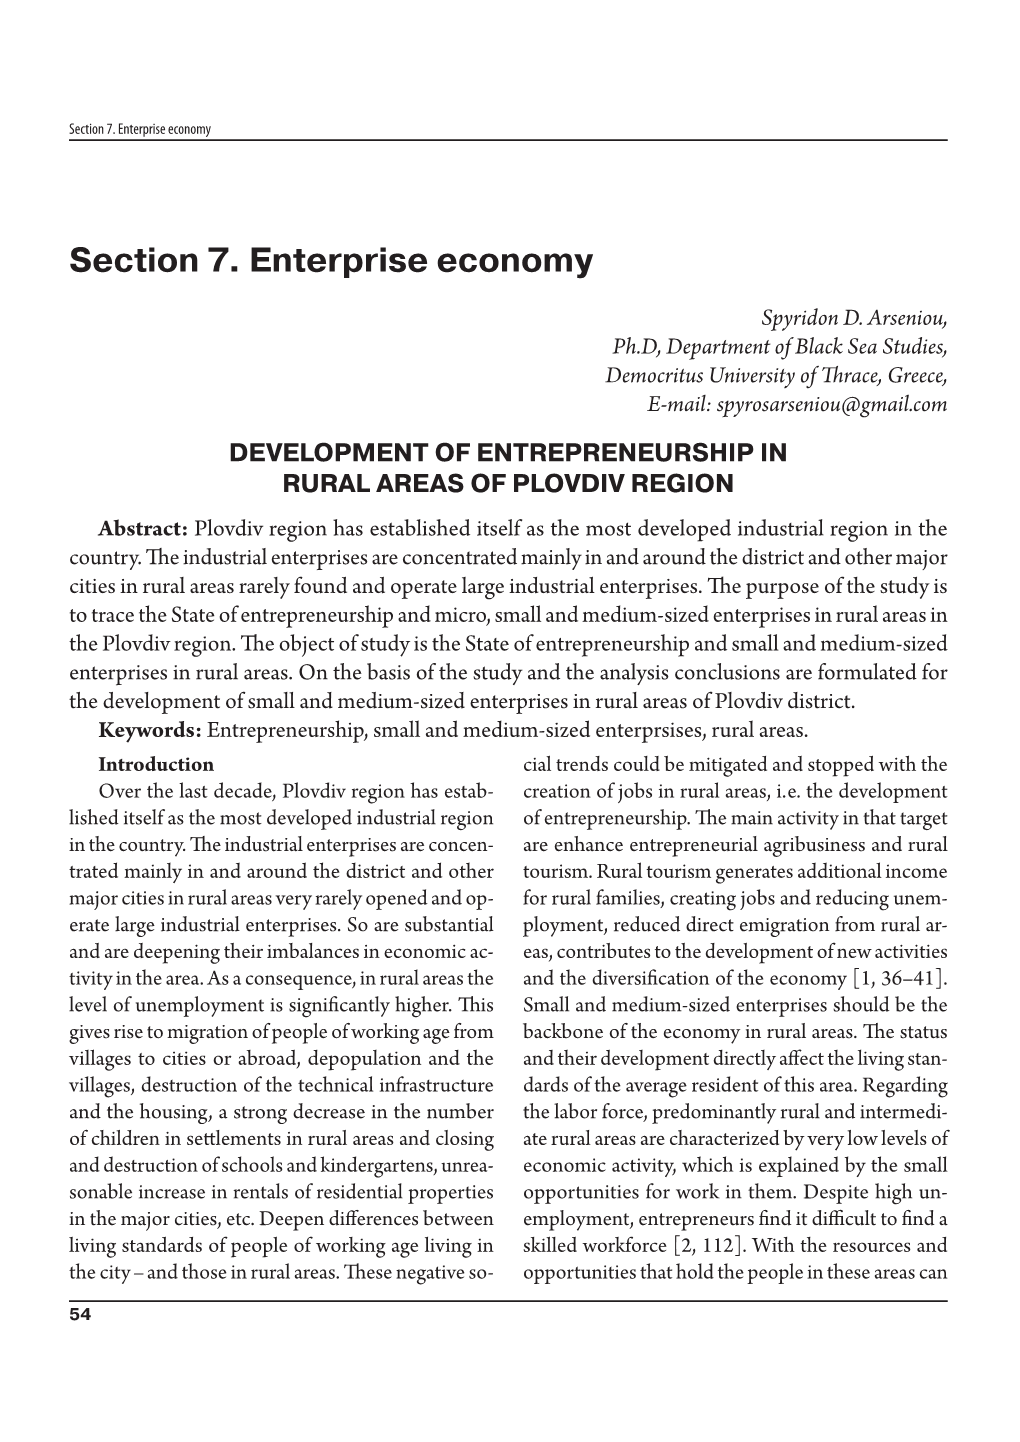 Development of Entrepreneurship in Rural Areas of Plovdiv Region